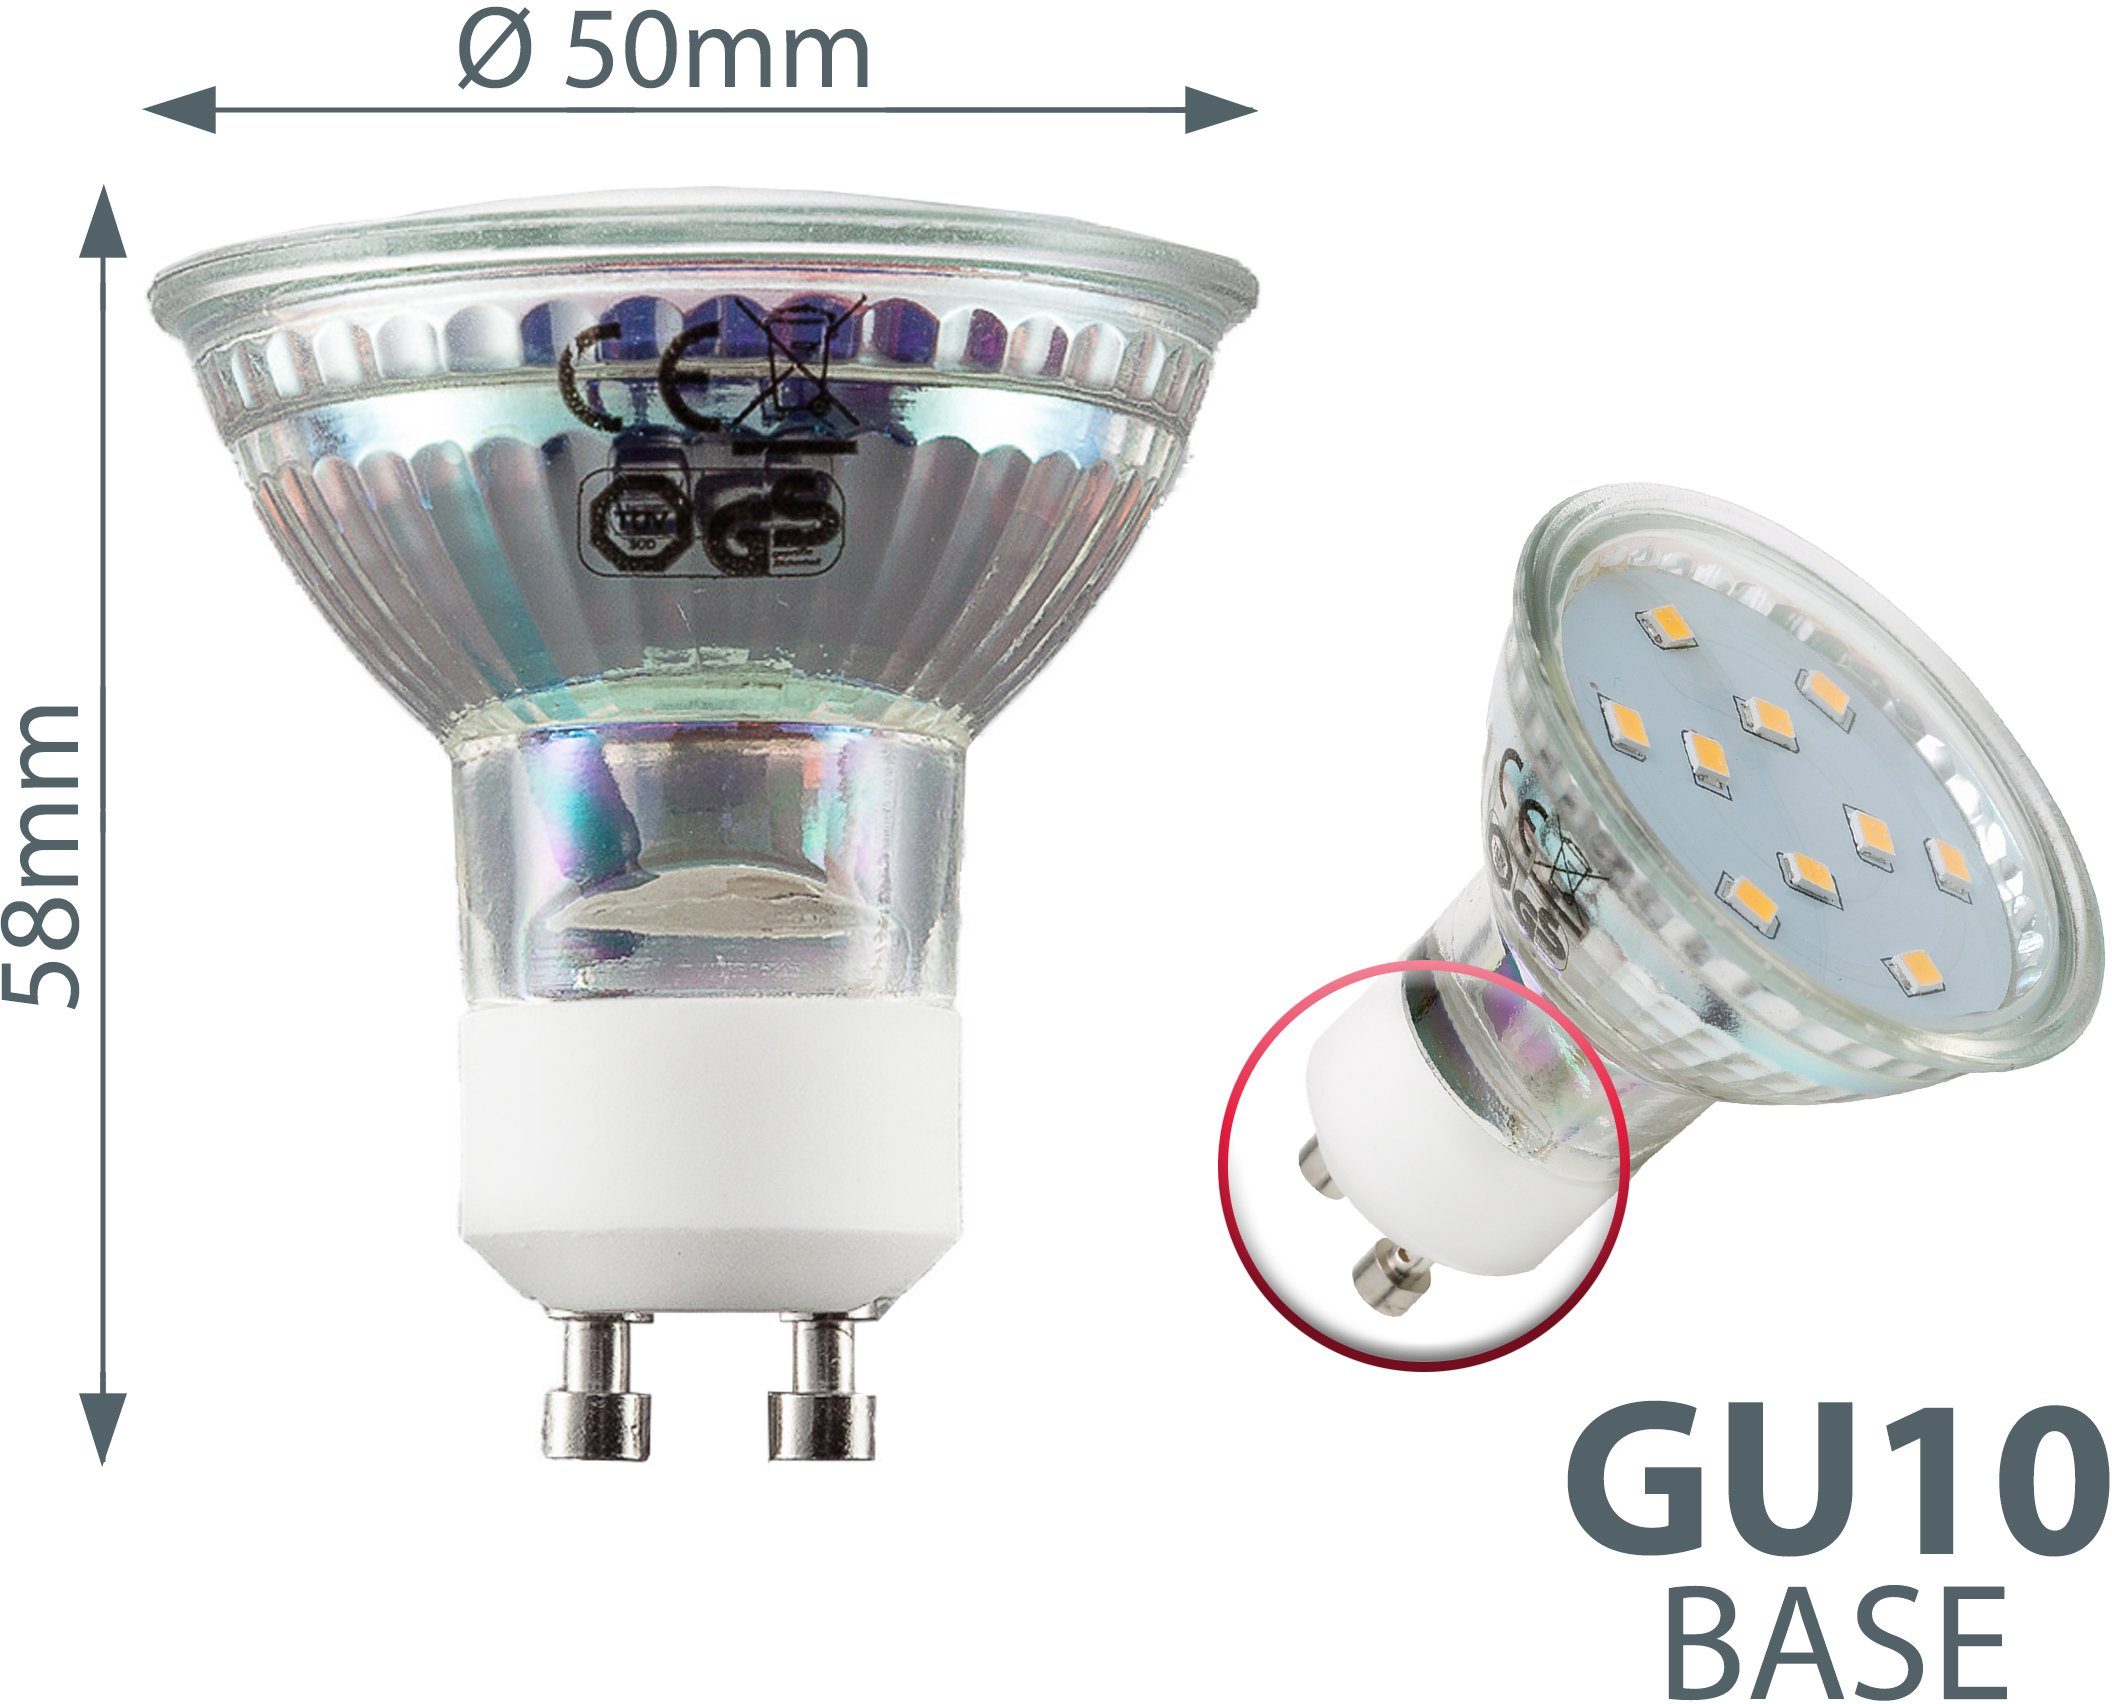 GU10, B.K.Licht St., SET 3 3.000 Kelvin Lampe Watt LED-Leuchtmittel, 250 Warmweiß, Energiesparlampe 10 Lumen LED Glühbirne